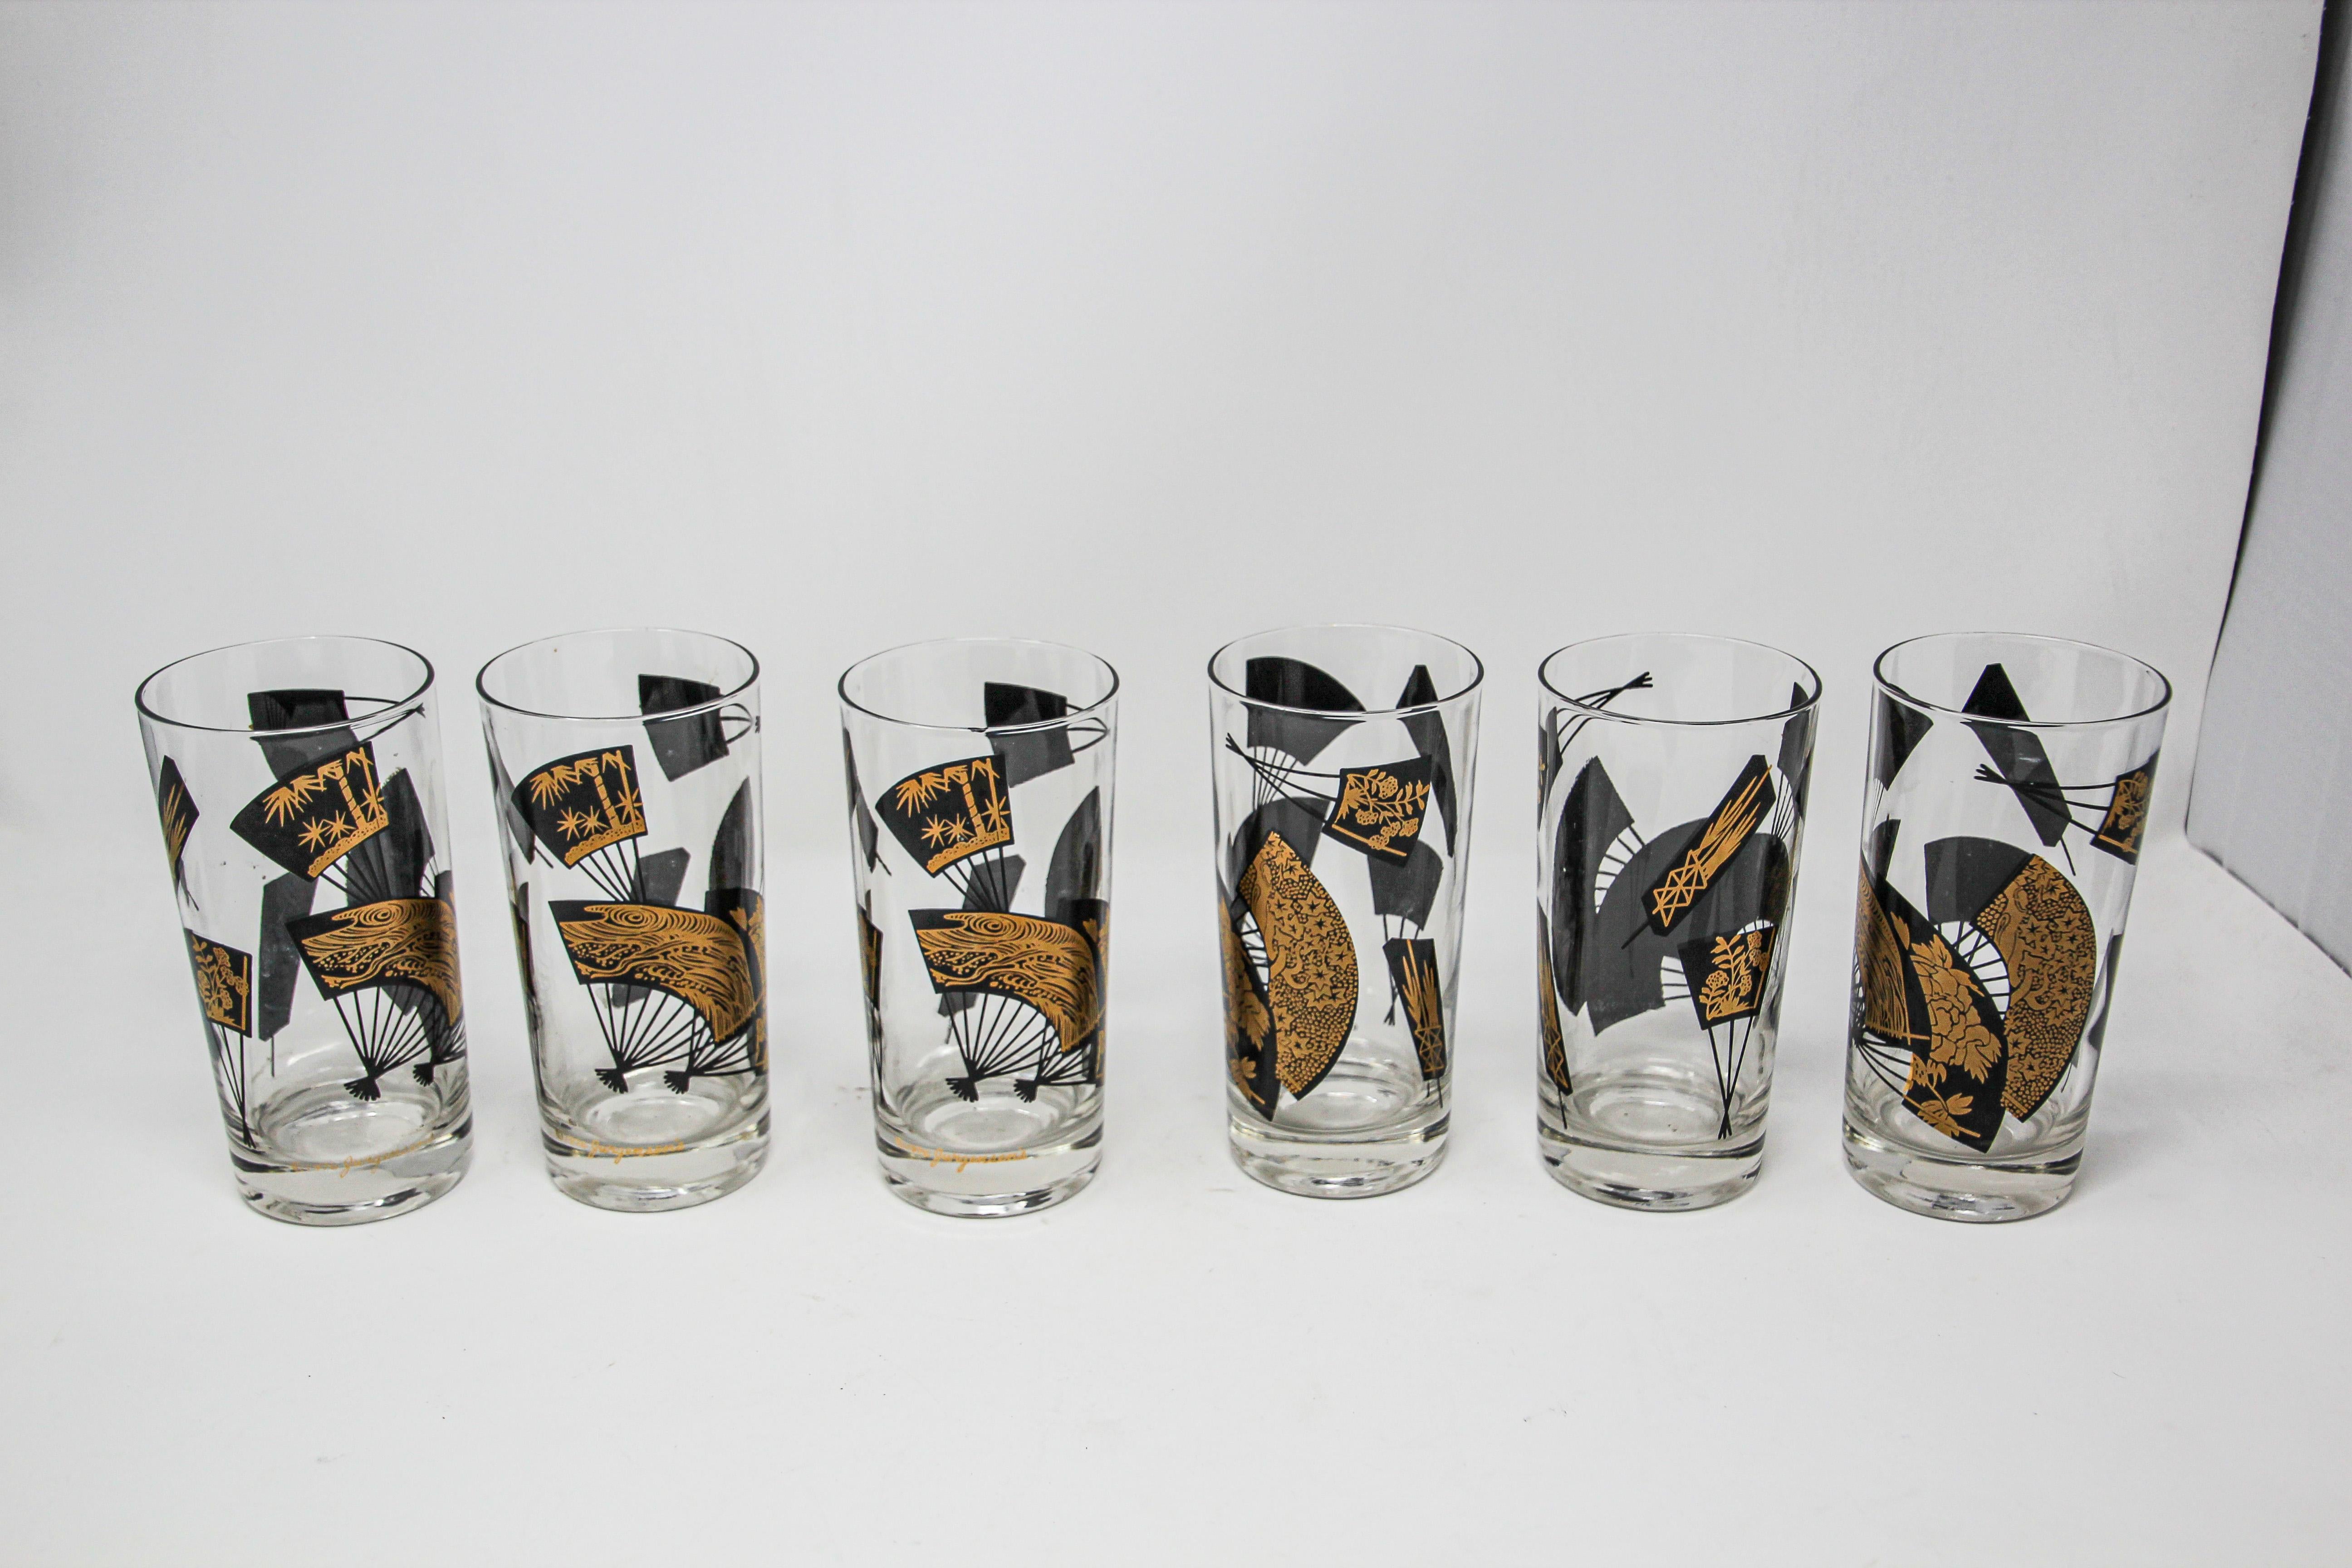 1976 Collectible Highball Tumbler Glasses Black and Gold by Gurgensen's Set of 6.
Elegant et exquis ensemble de six verres dorés highball à thème asiatique, conçu par Gurgensen's, circa 1976.
Verres de bar de collection Hollywood Regency décorés à